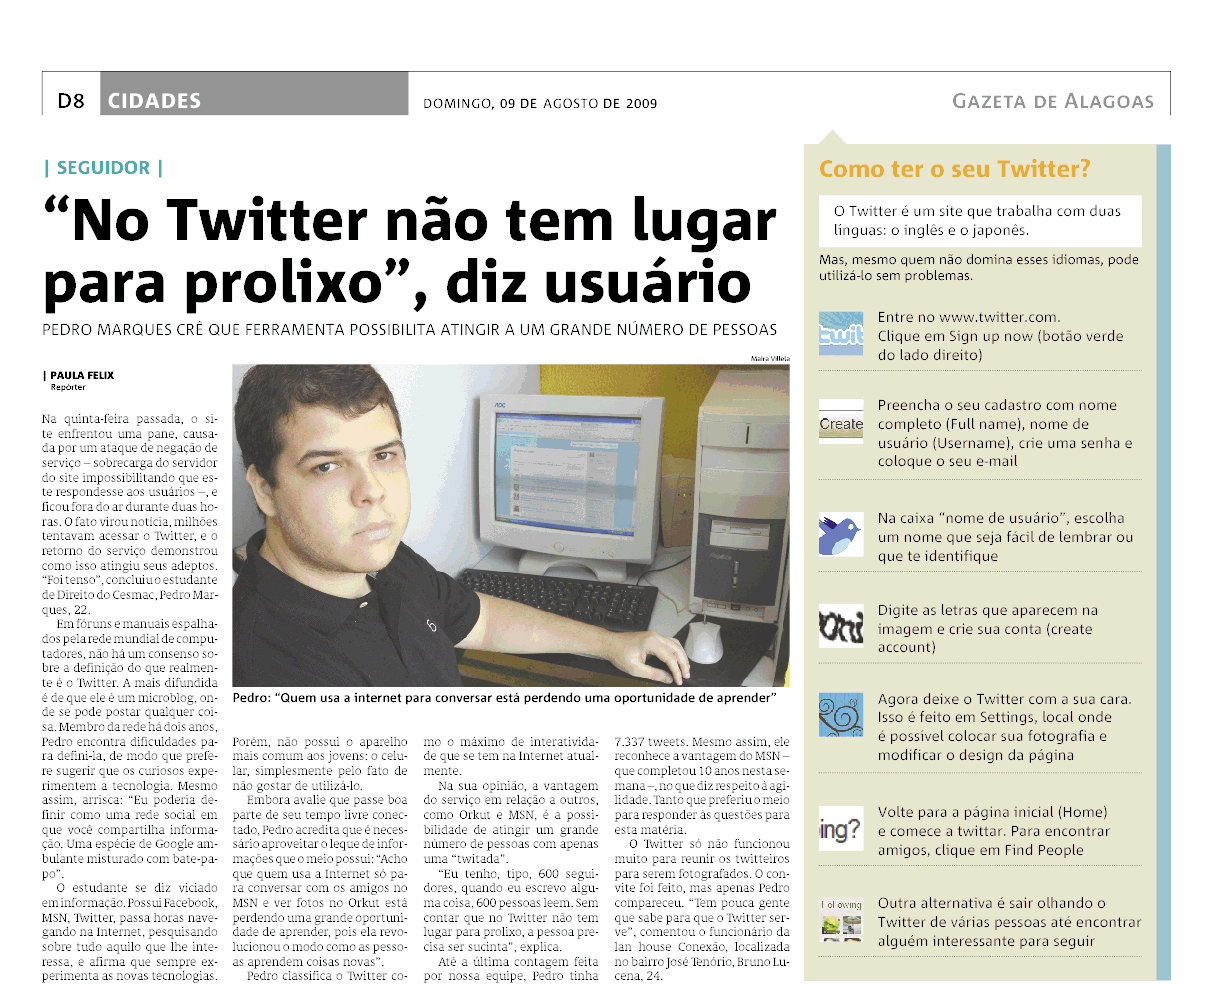 Matéria sobre Twitter na Gazeta de Alagoas